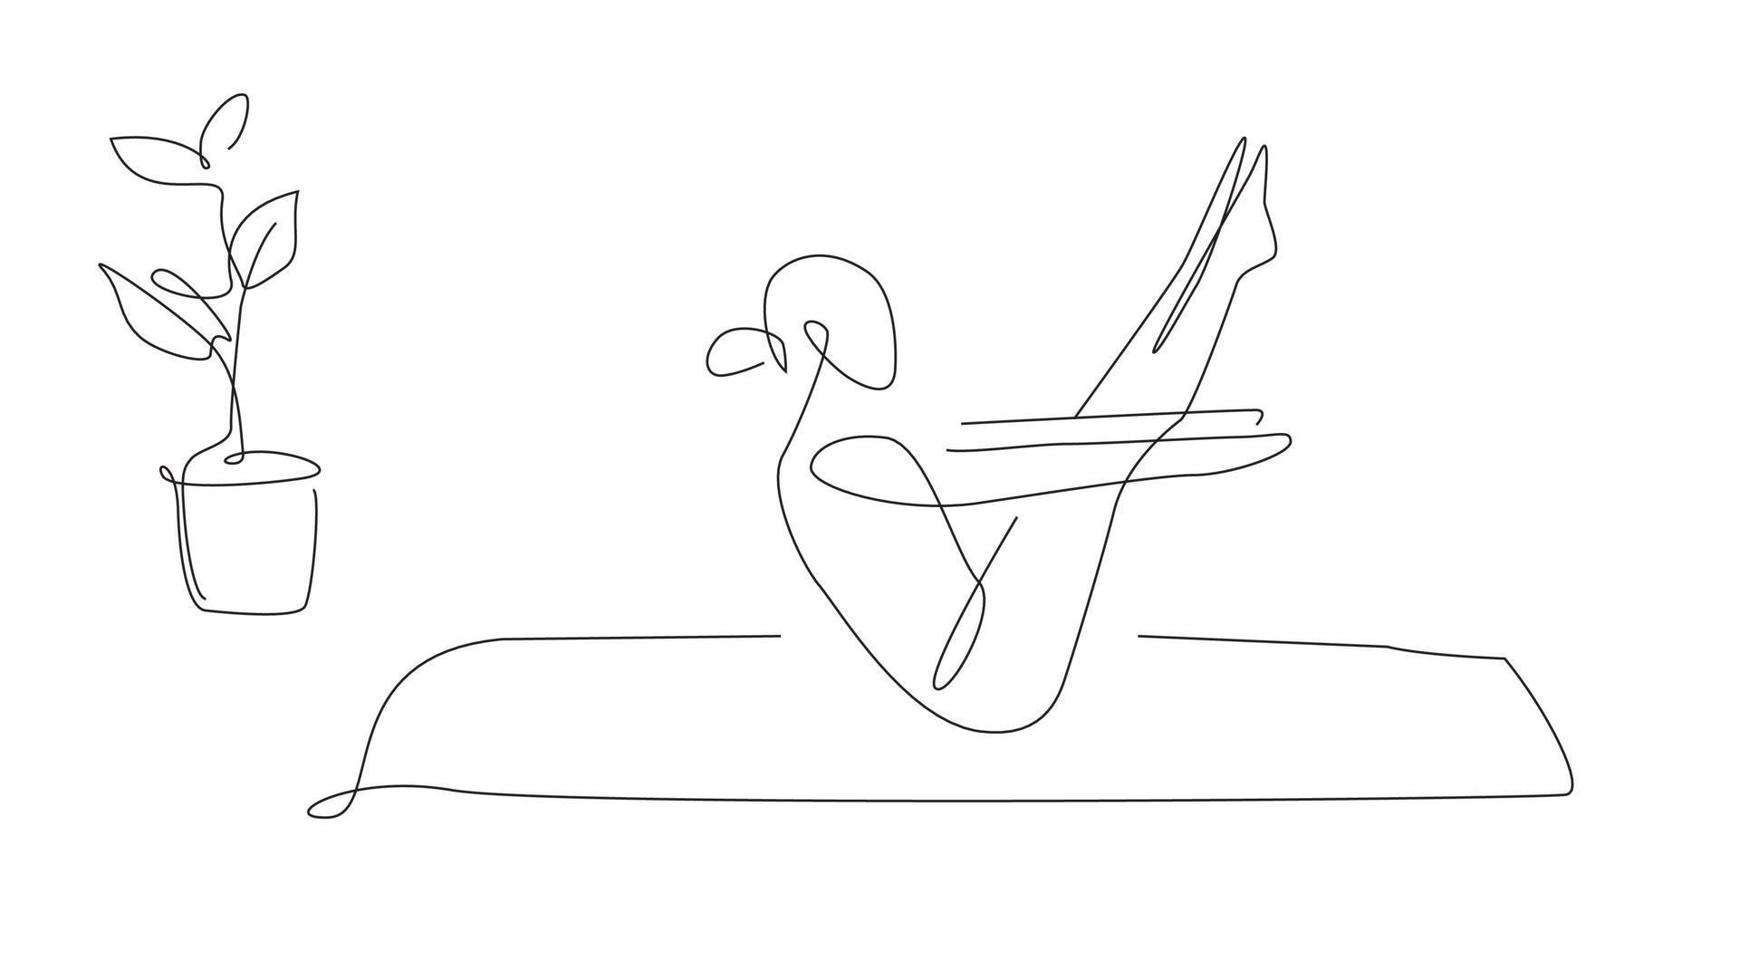 pose de cobra de yoga. illustration d'asana de yoga d'une ligne. pose simple vecteur pilates